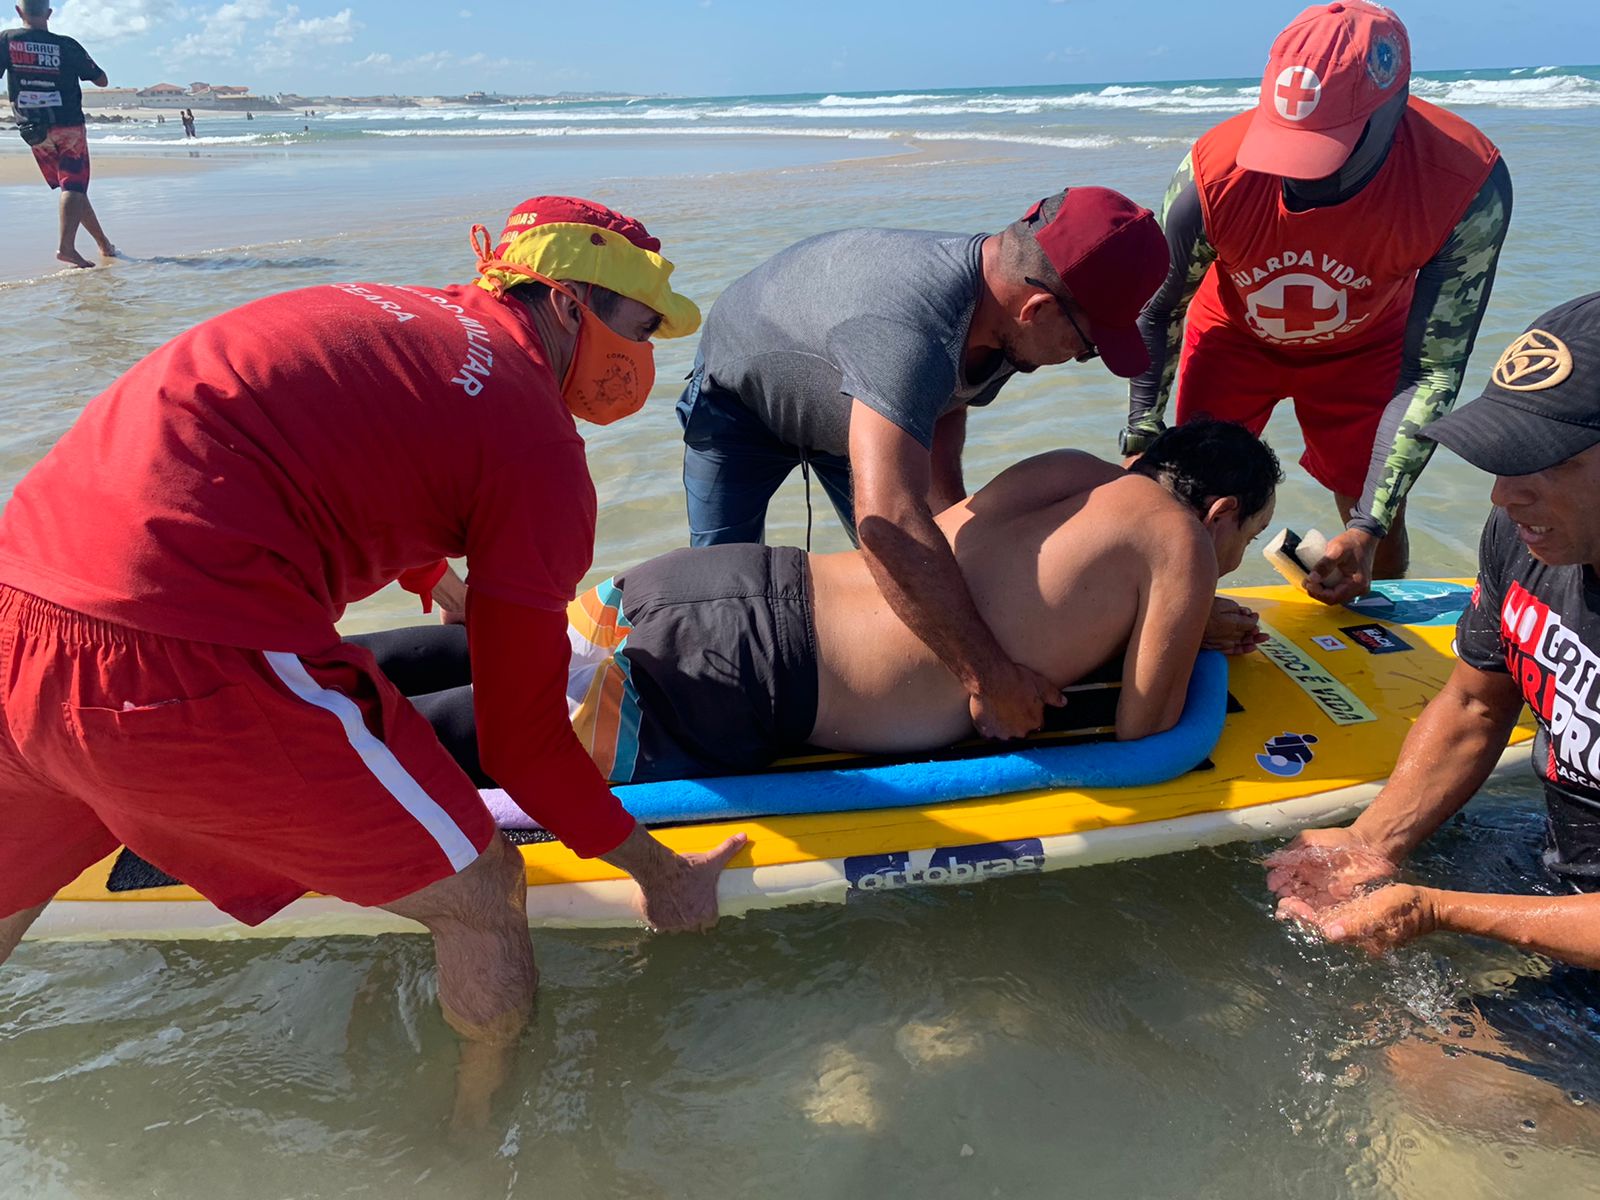 Corpo de Bombeiros atua na prevenção de demonstração de atletas paraplégicos no surf